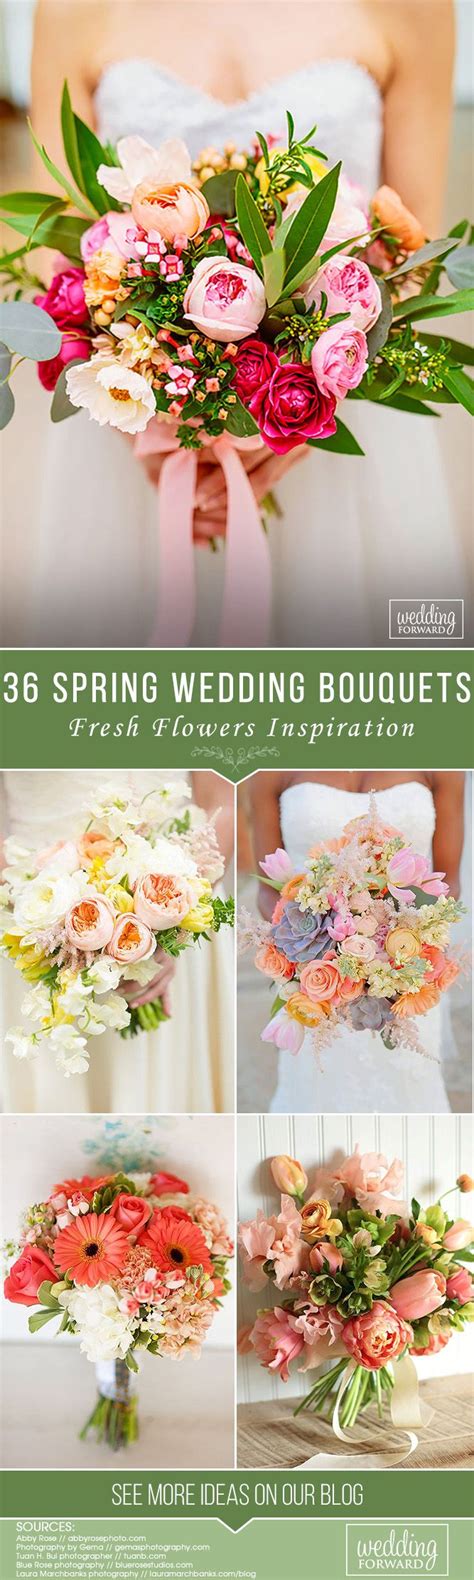 39 Fresh Spring Wedding Bouquets Wedding Forward Spring Wedding